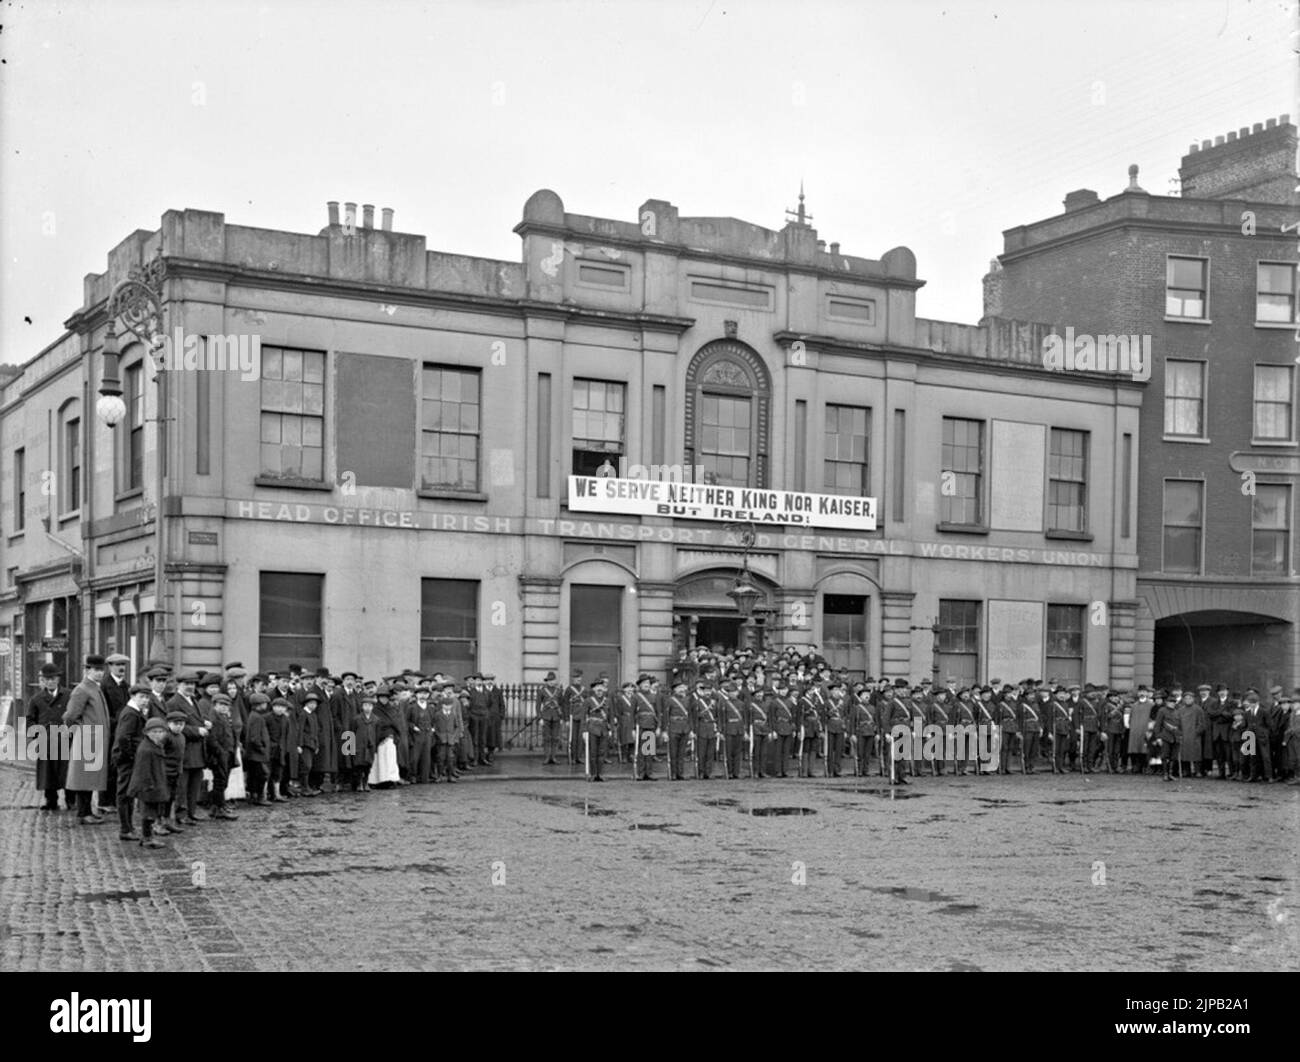 Des membres de l'Armée citoyenne irlandaise à l'extérieur de Liberty Hall, sous le slogan « nous ne servons ni roi ni Kaiser, mais Irlande » Banque D'Images